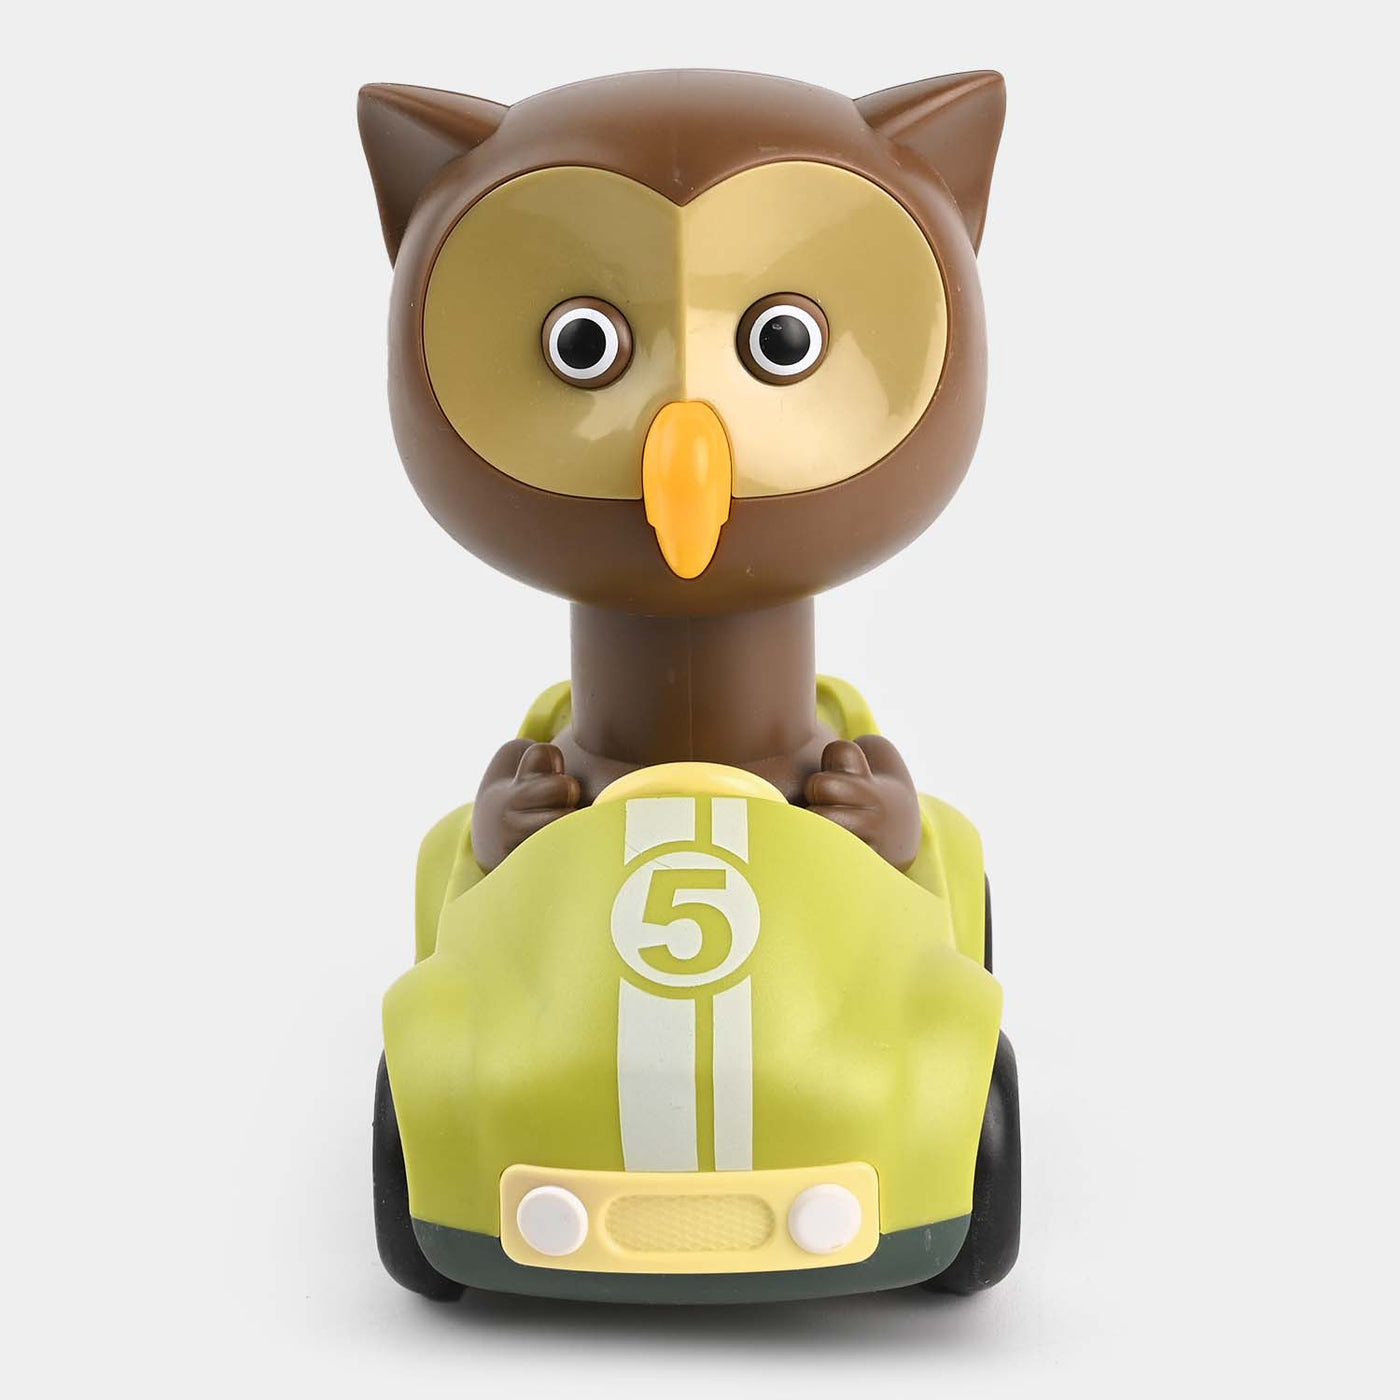 Four-Wheel Cartoon Car With Owl Toy